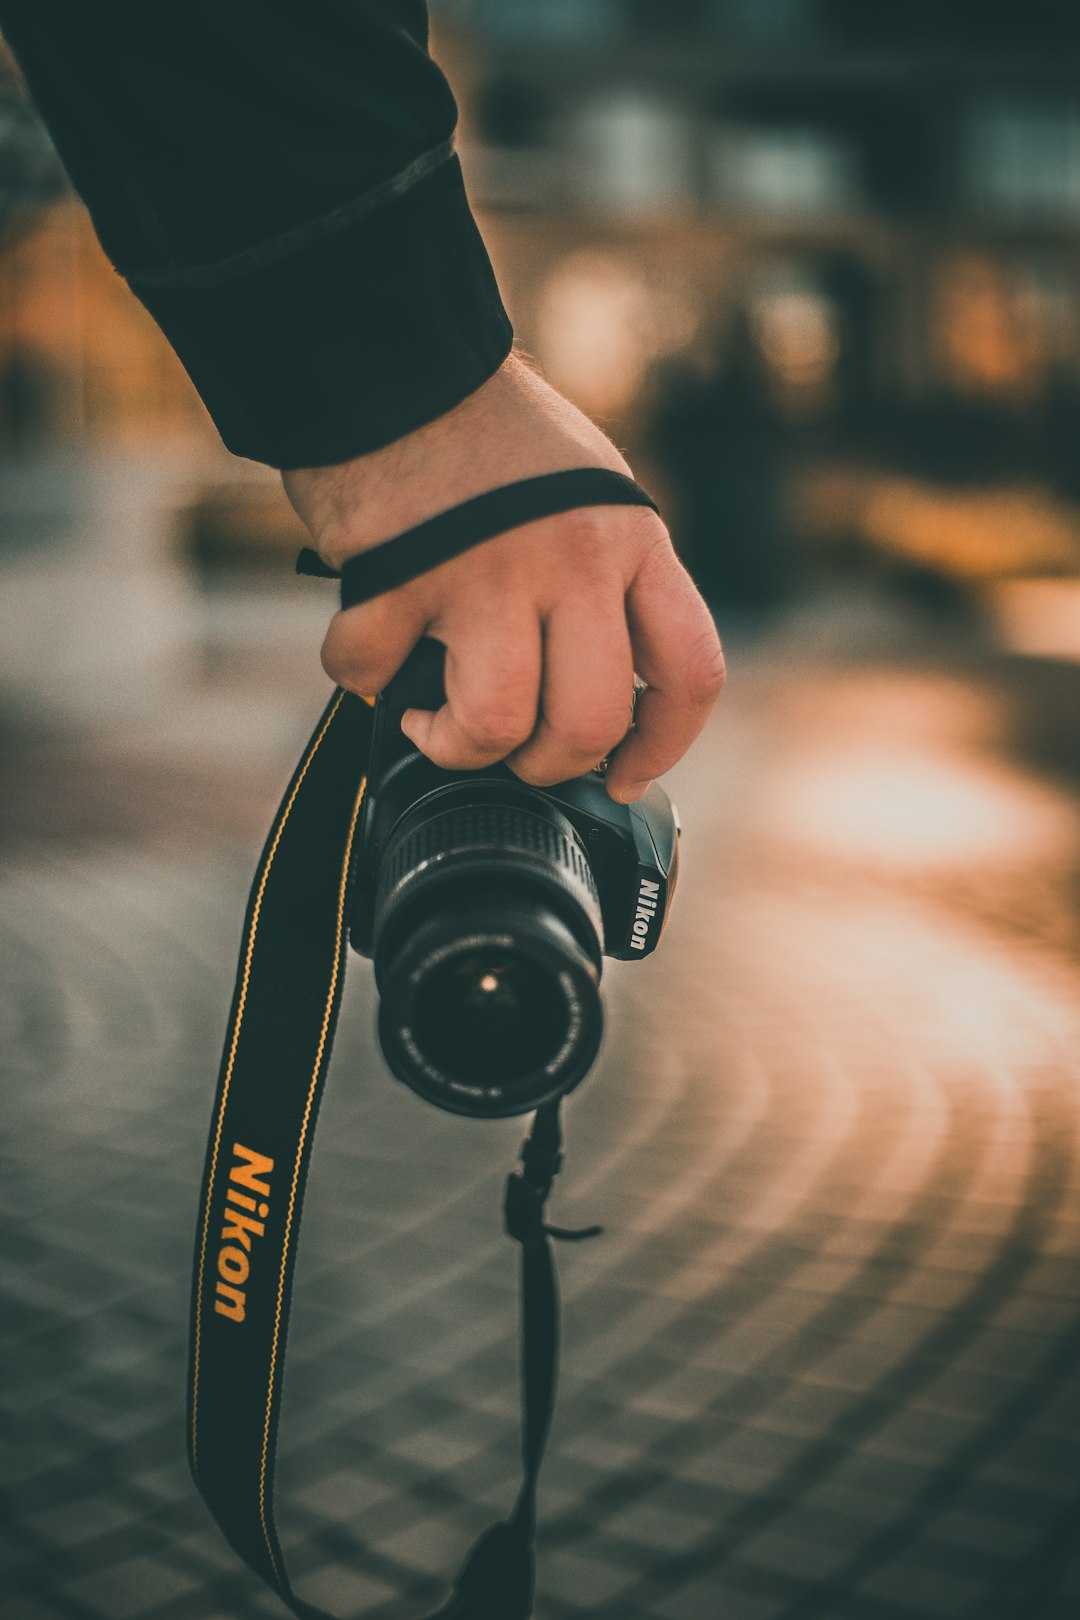 person holding black Nikon DSLR camera